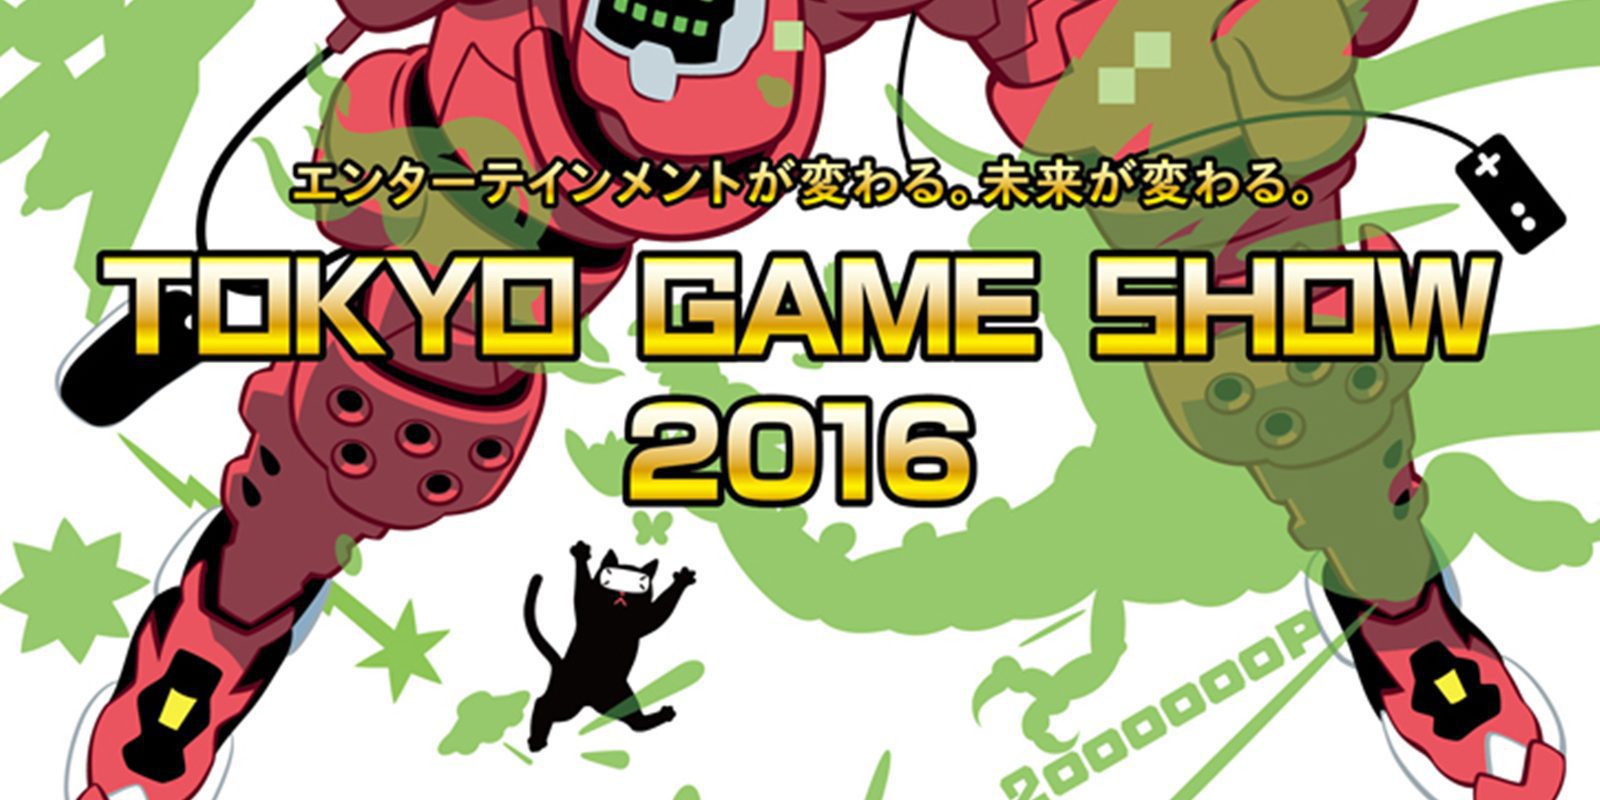 Tokyo Game Show 2016 - Desvelado el cartel oficial de la 20 edición